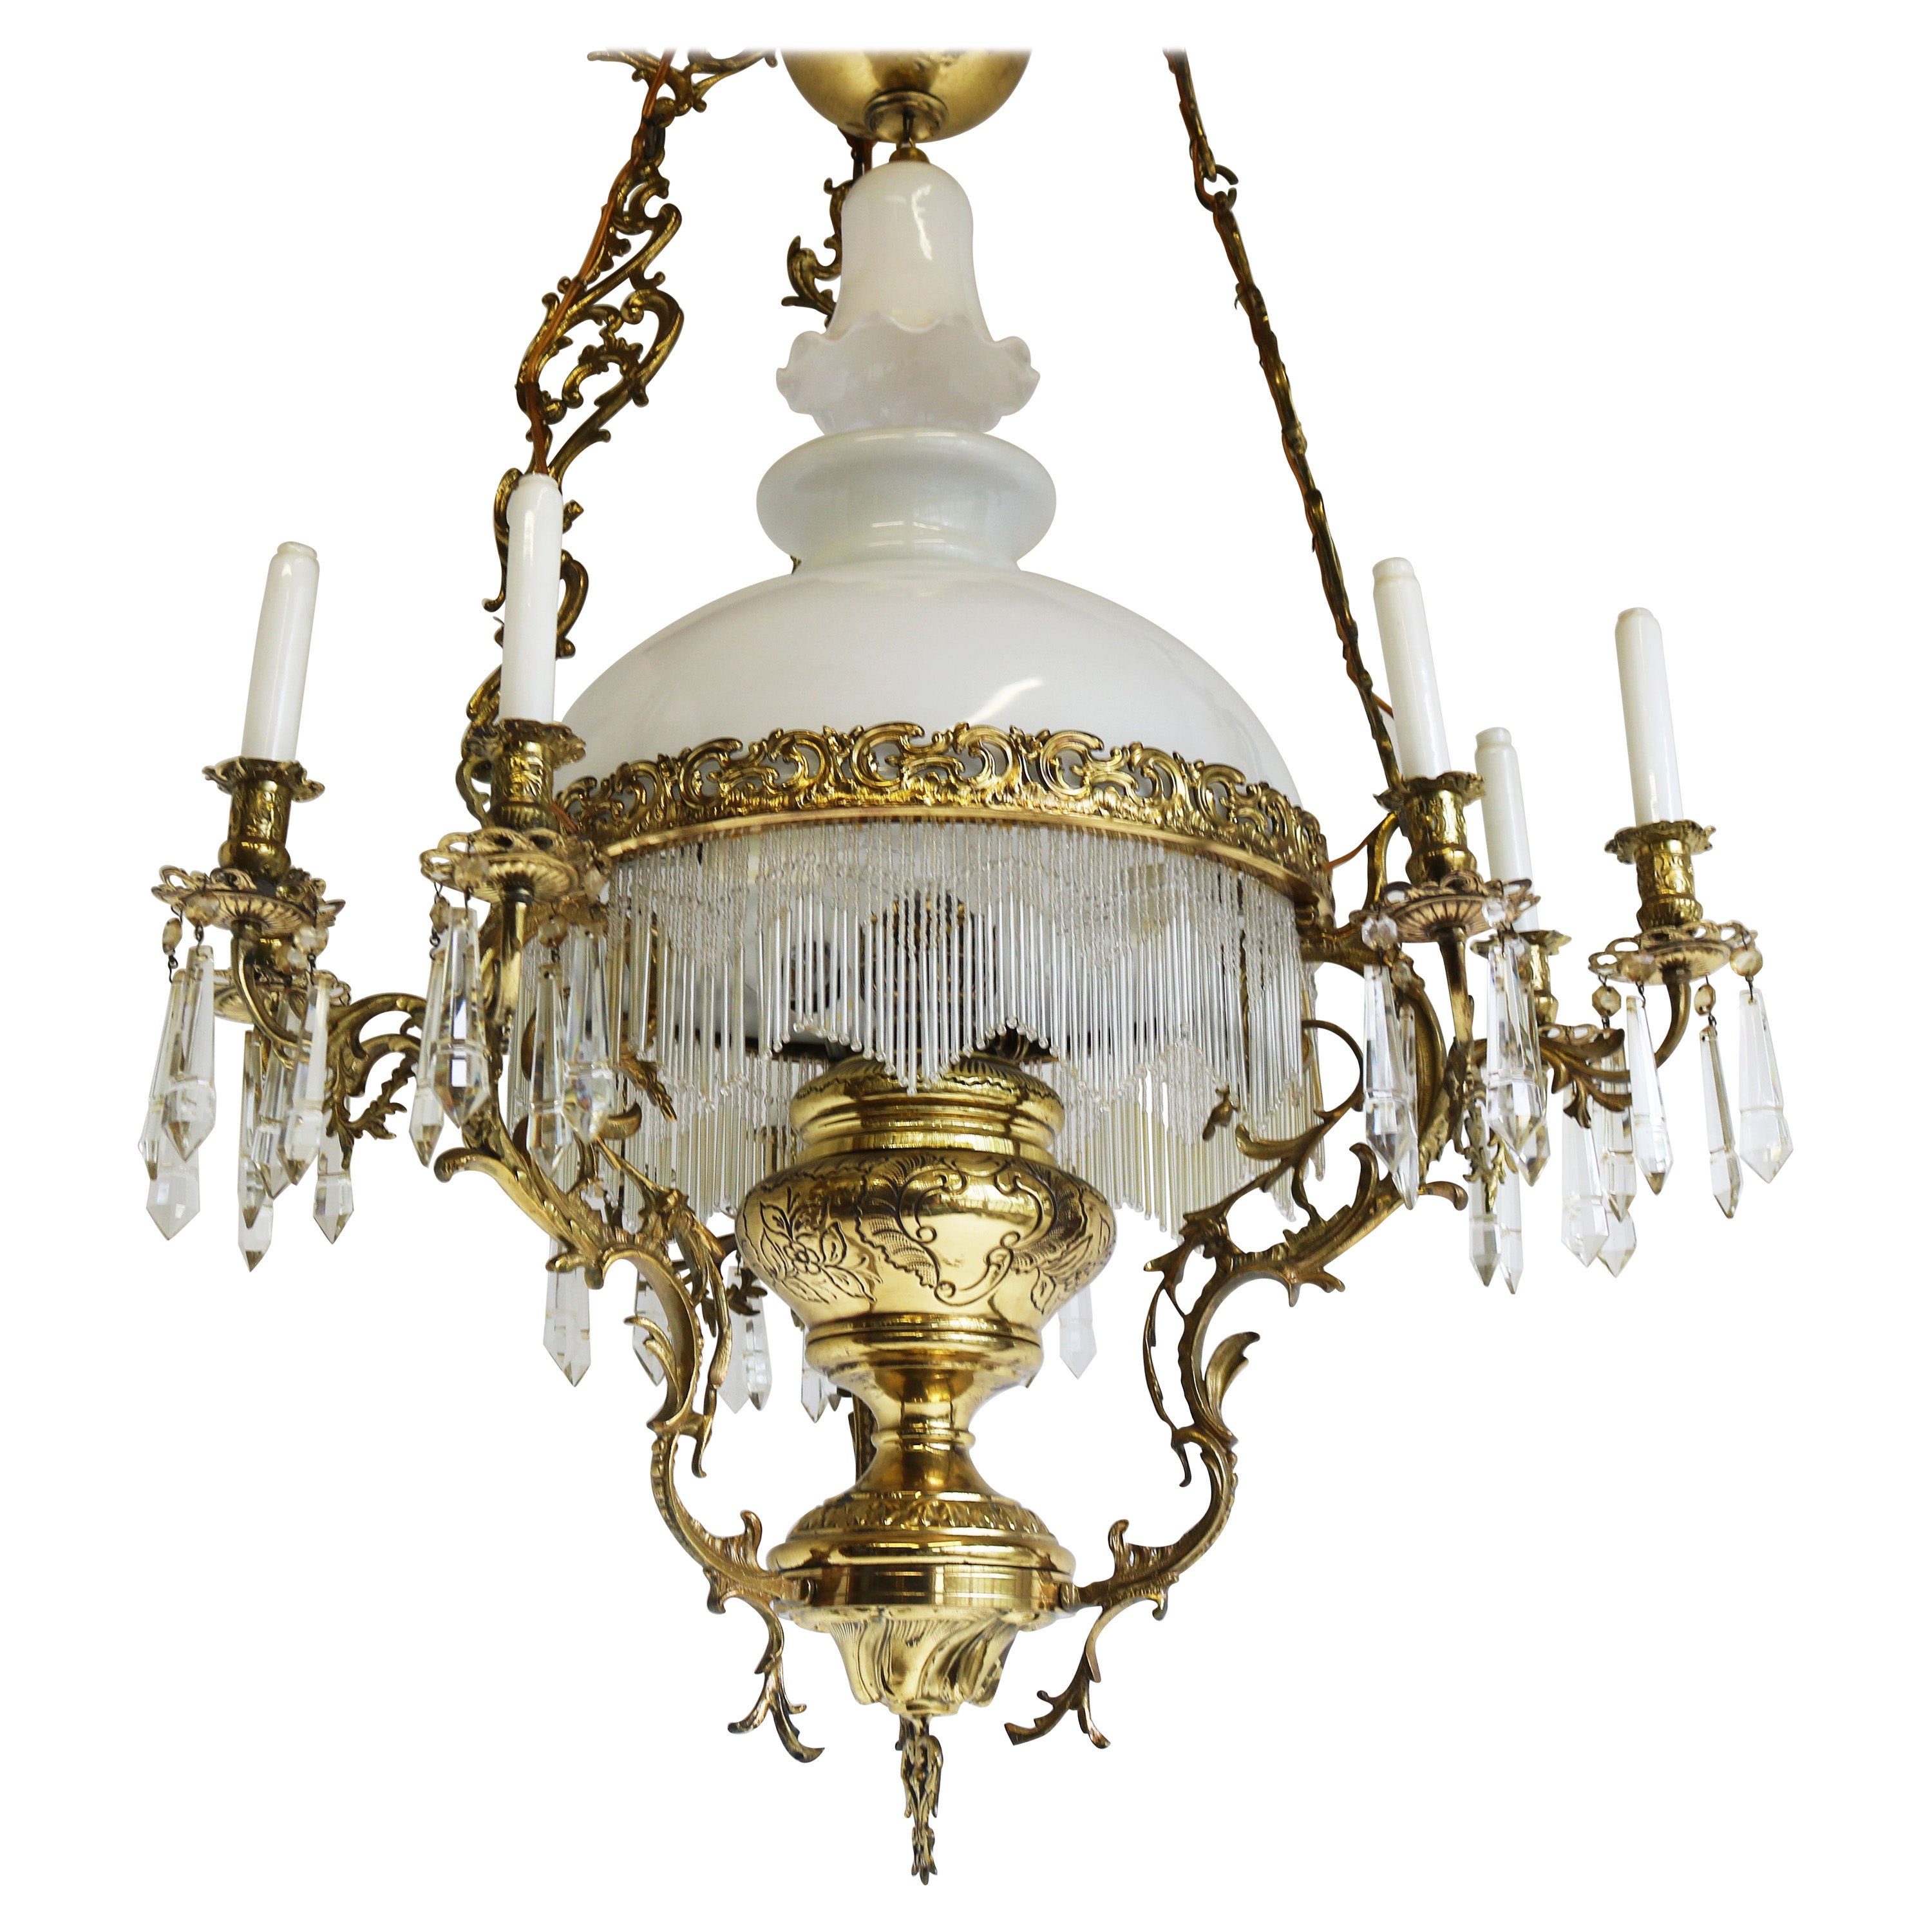 Ancienne lampe à huile française victorienne du XIXe siècle, lustre suspendu en laiton et opaline